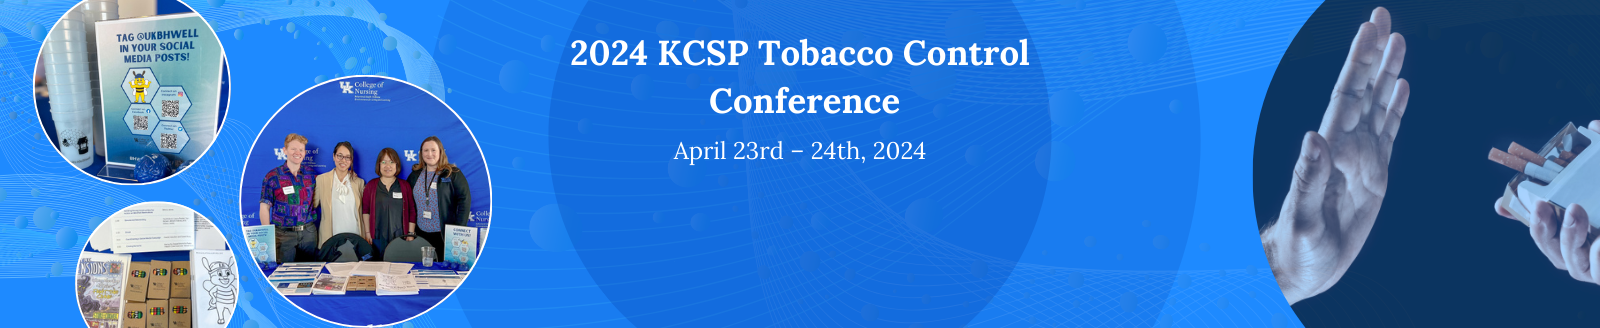 2024 KCSP Conference banner